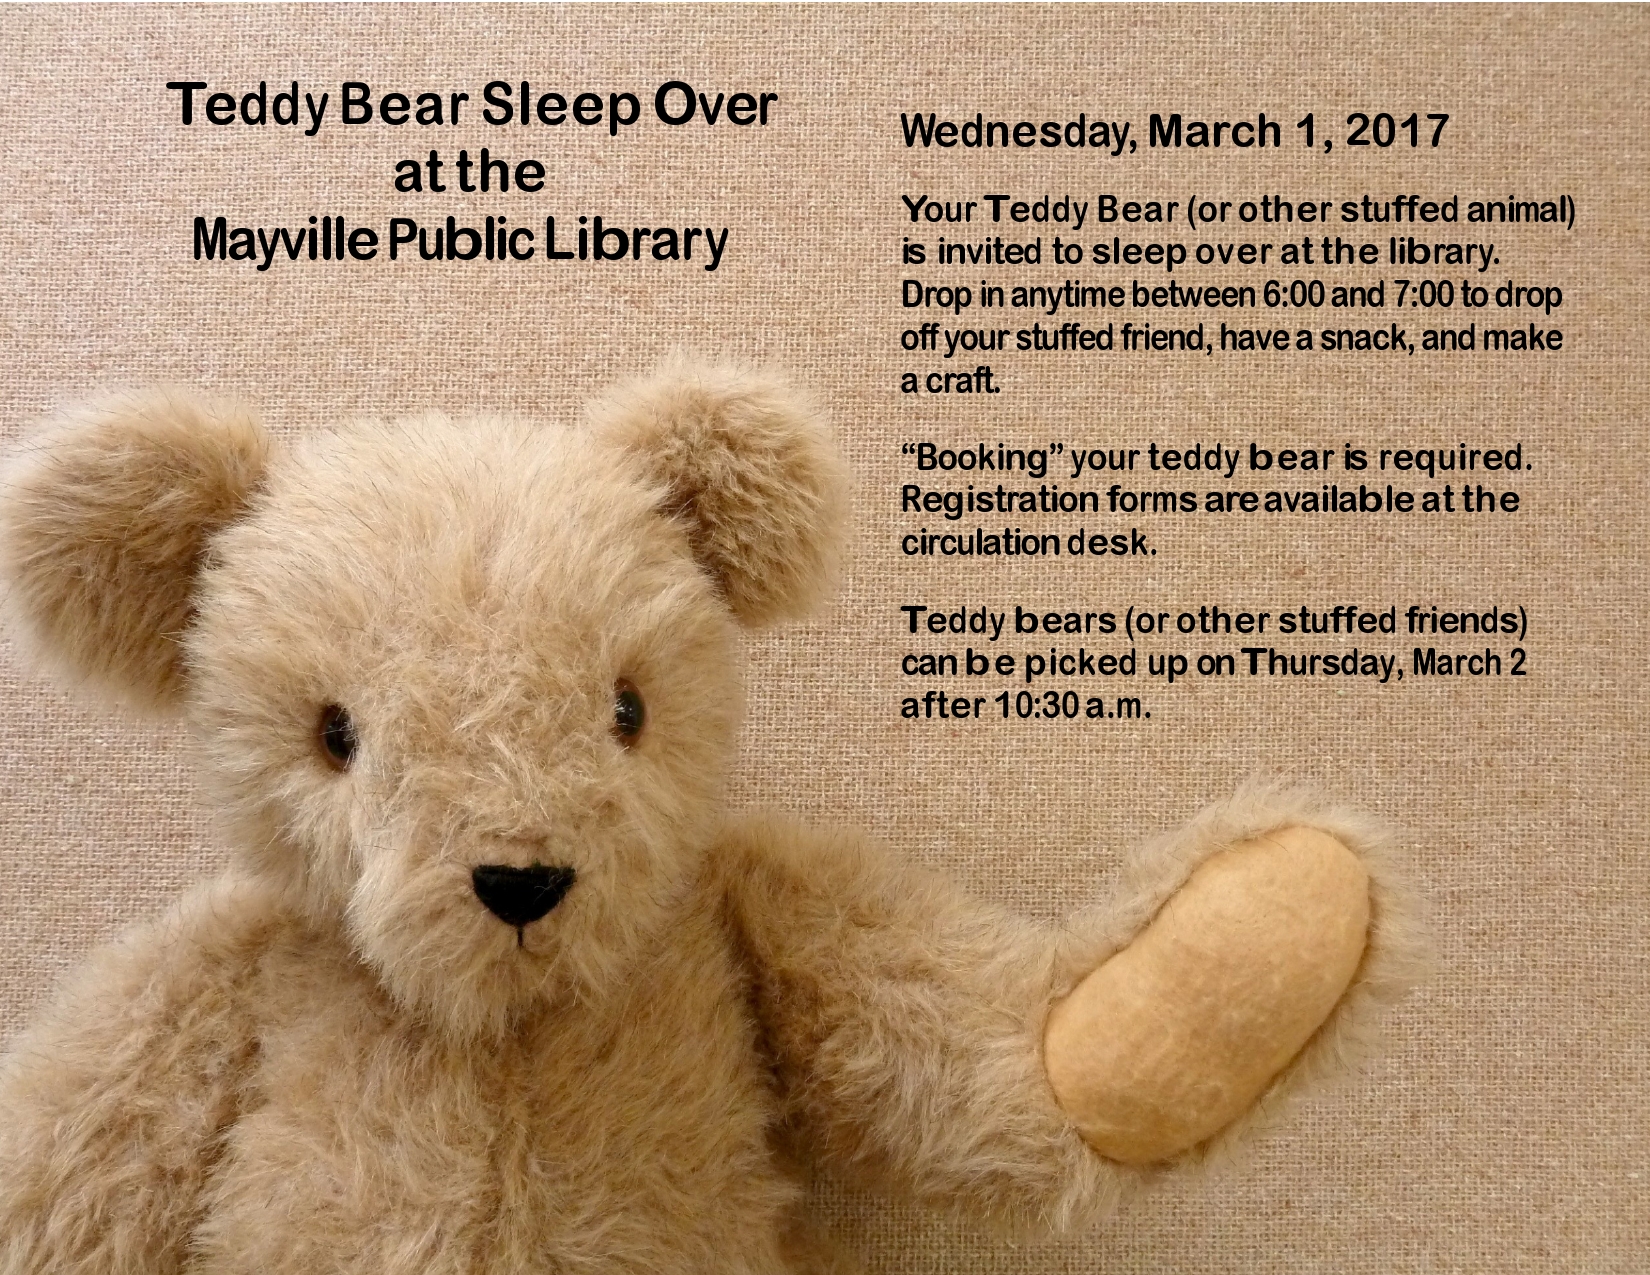 Teddy Bear Sleep Over Flyer-page0001.